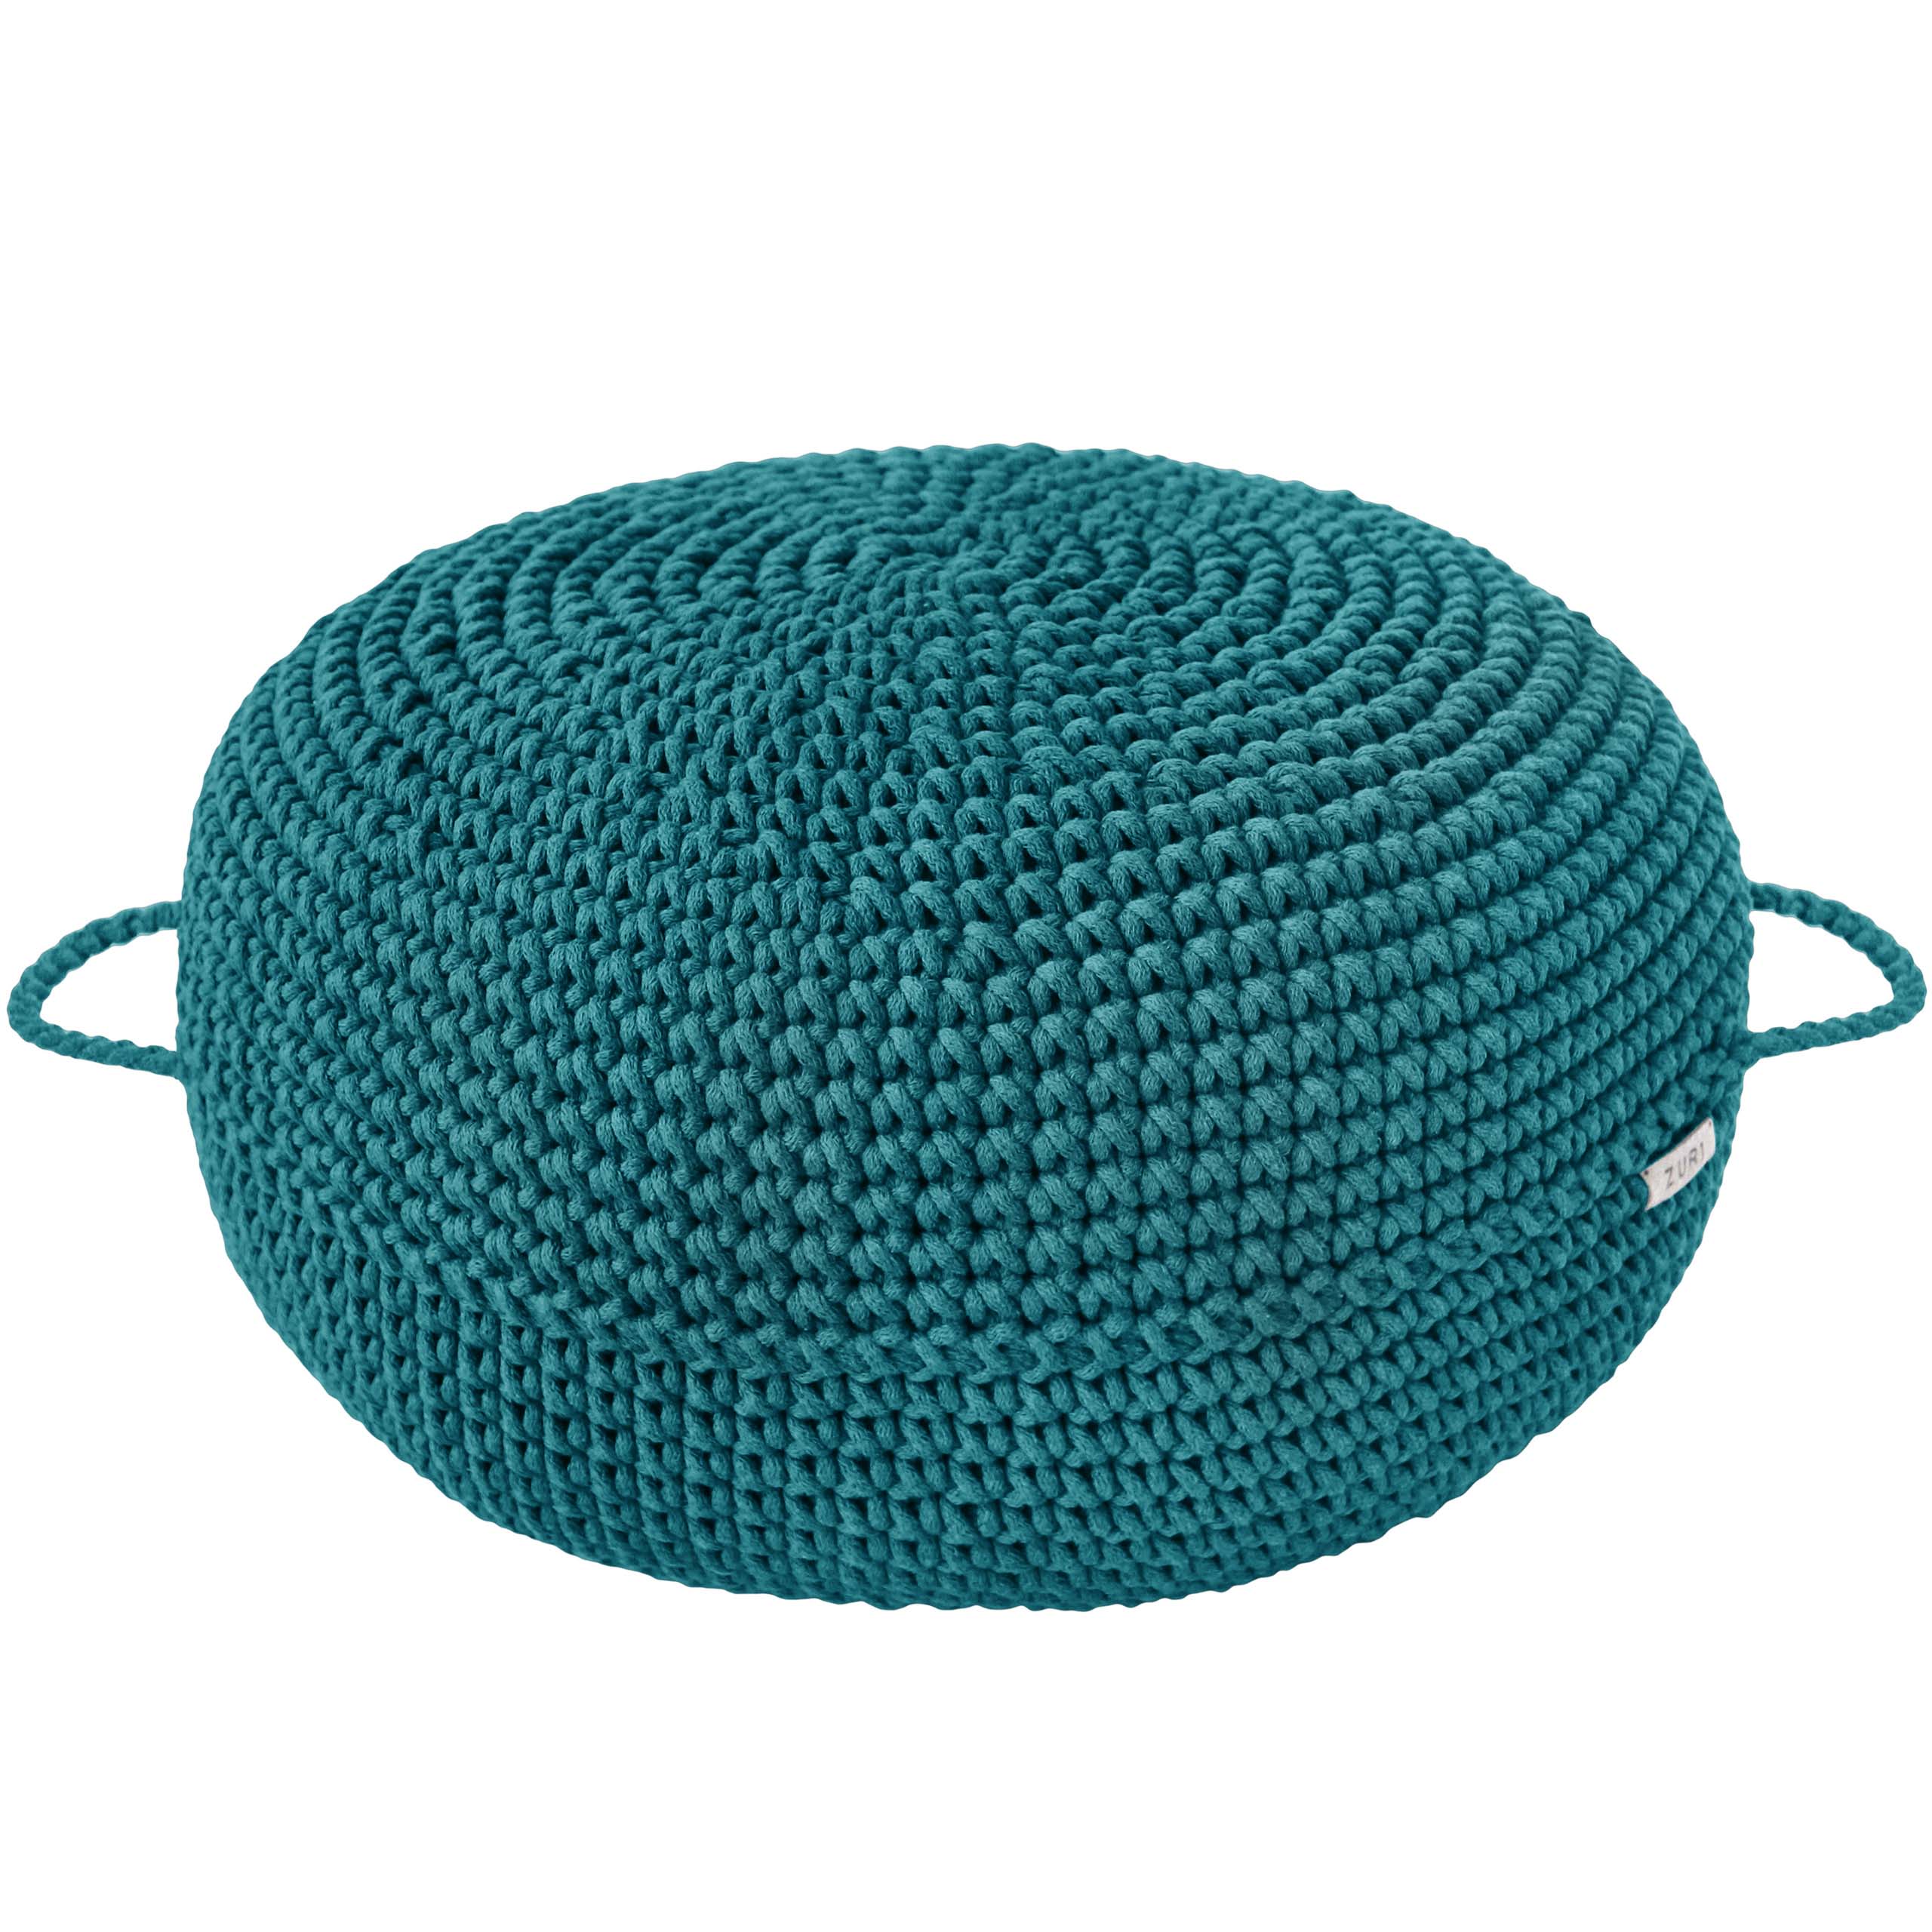 Crochet ottoman | OCEAN BLUE